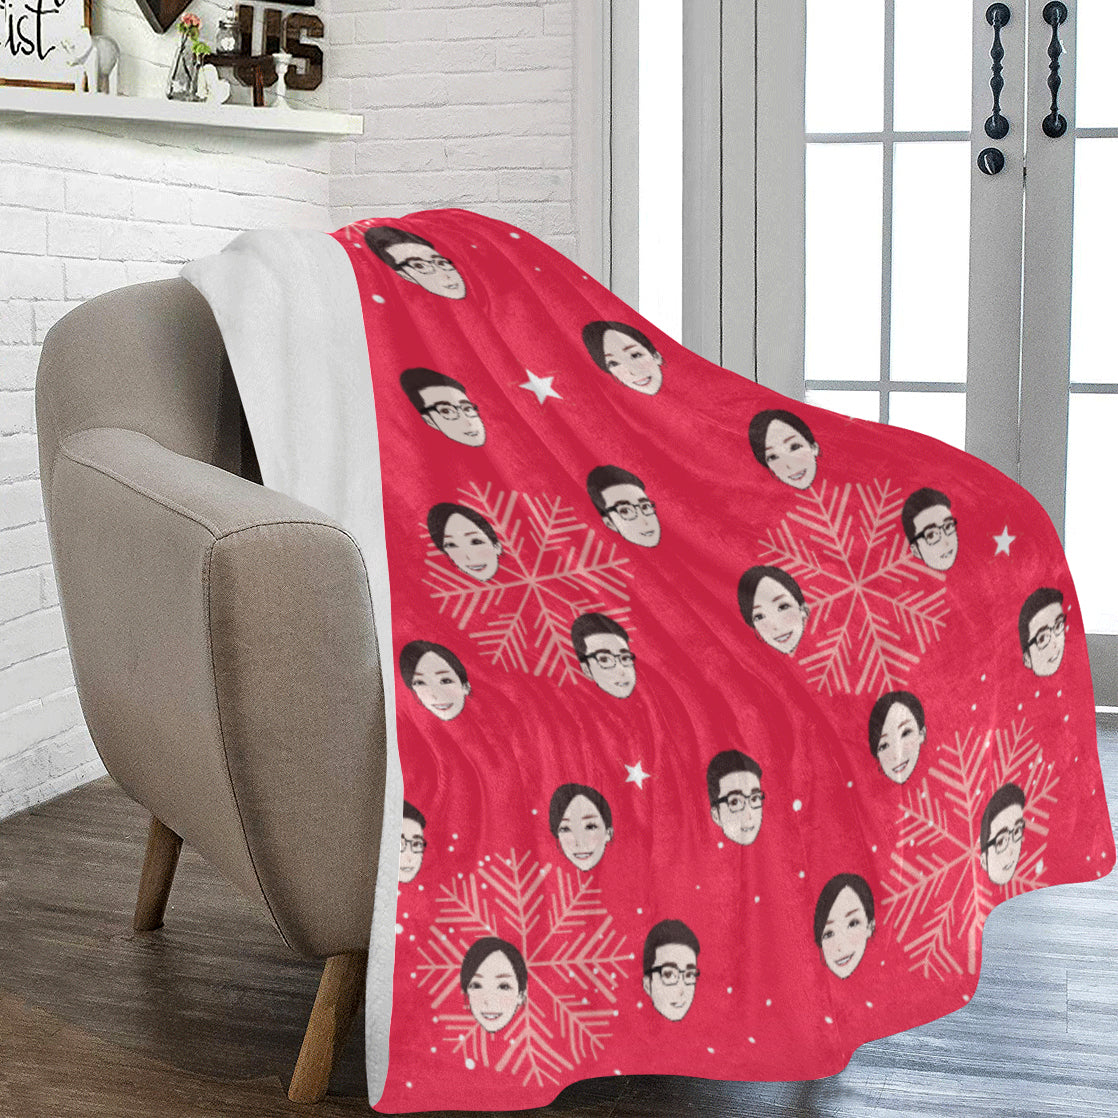 聖誕禮物定製-客製化插畫毛毯-雪花(紅)款式 Christmas Blanket (Red)  Custom Blanket with tailor-made illustration. - HKGIFTFORU